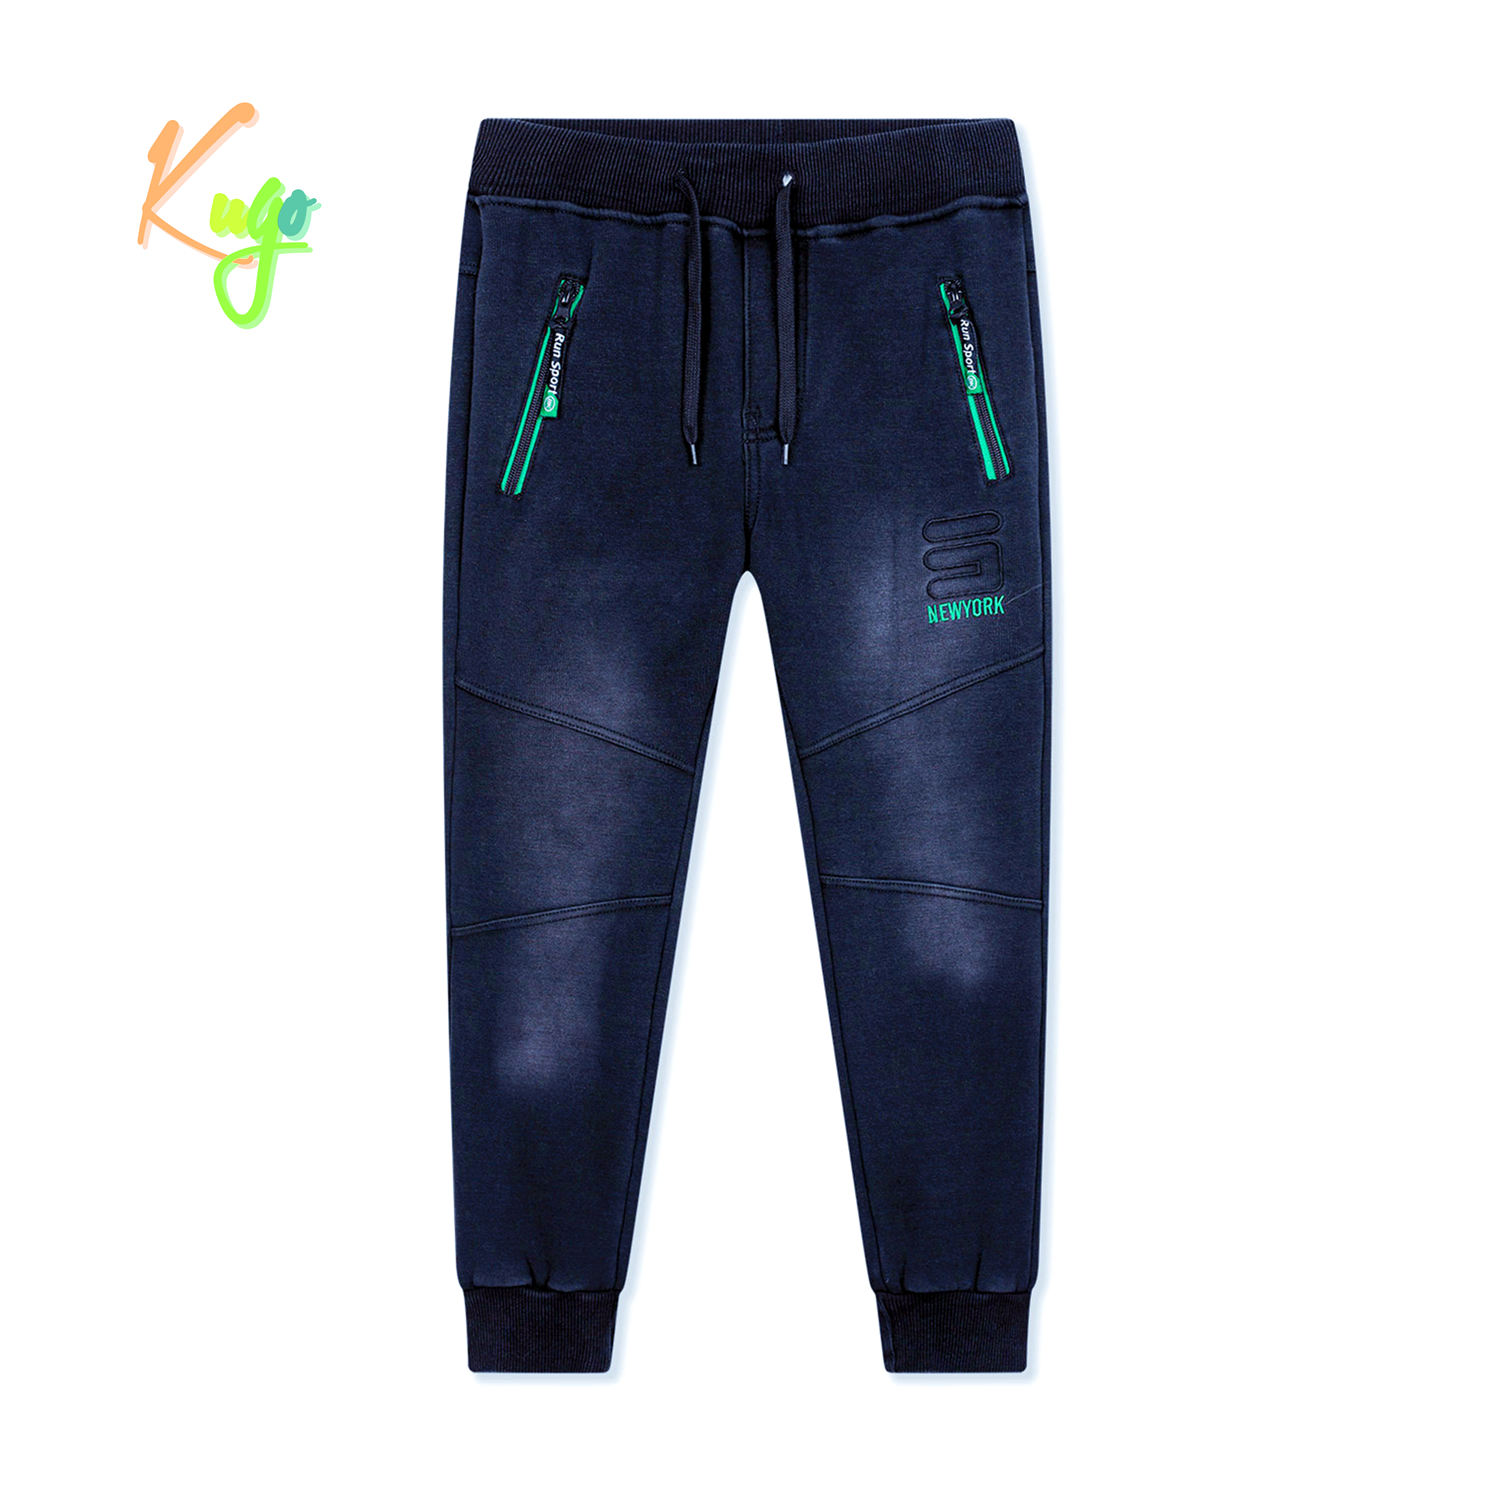 Chlapecké riflové kalhoty/ tepláky, zateplené - KUGO FK0318, modrá Barva: Modrá, Velikost: 158